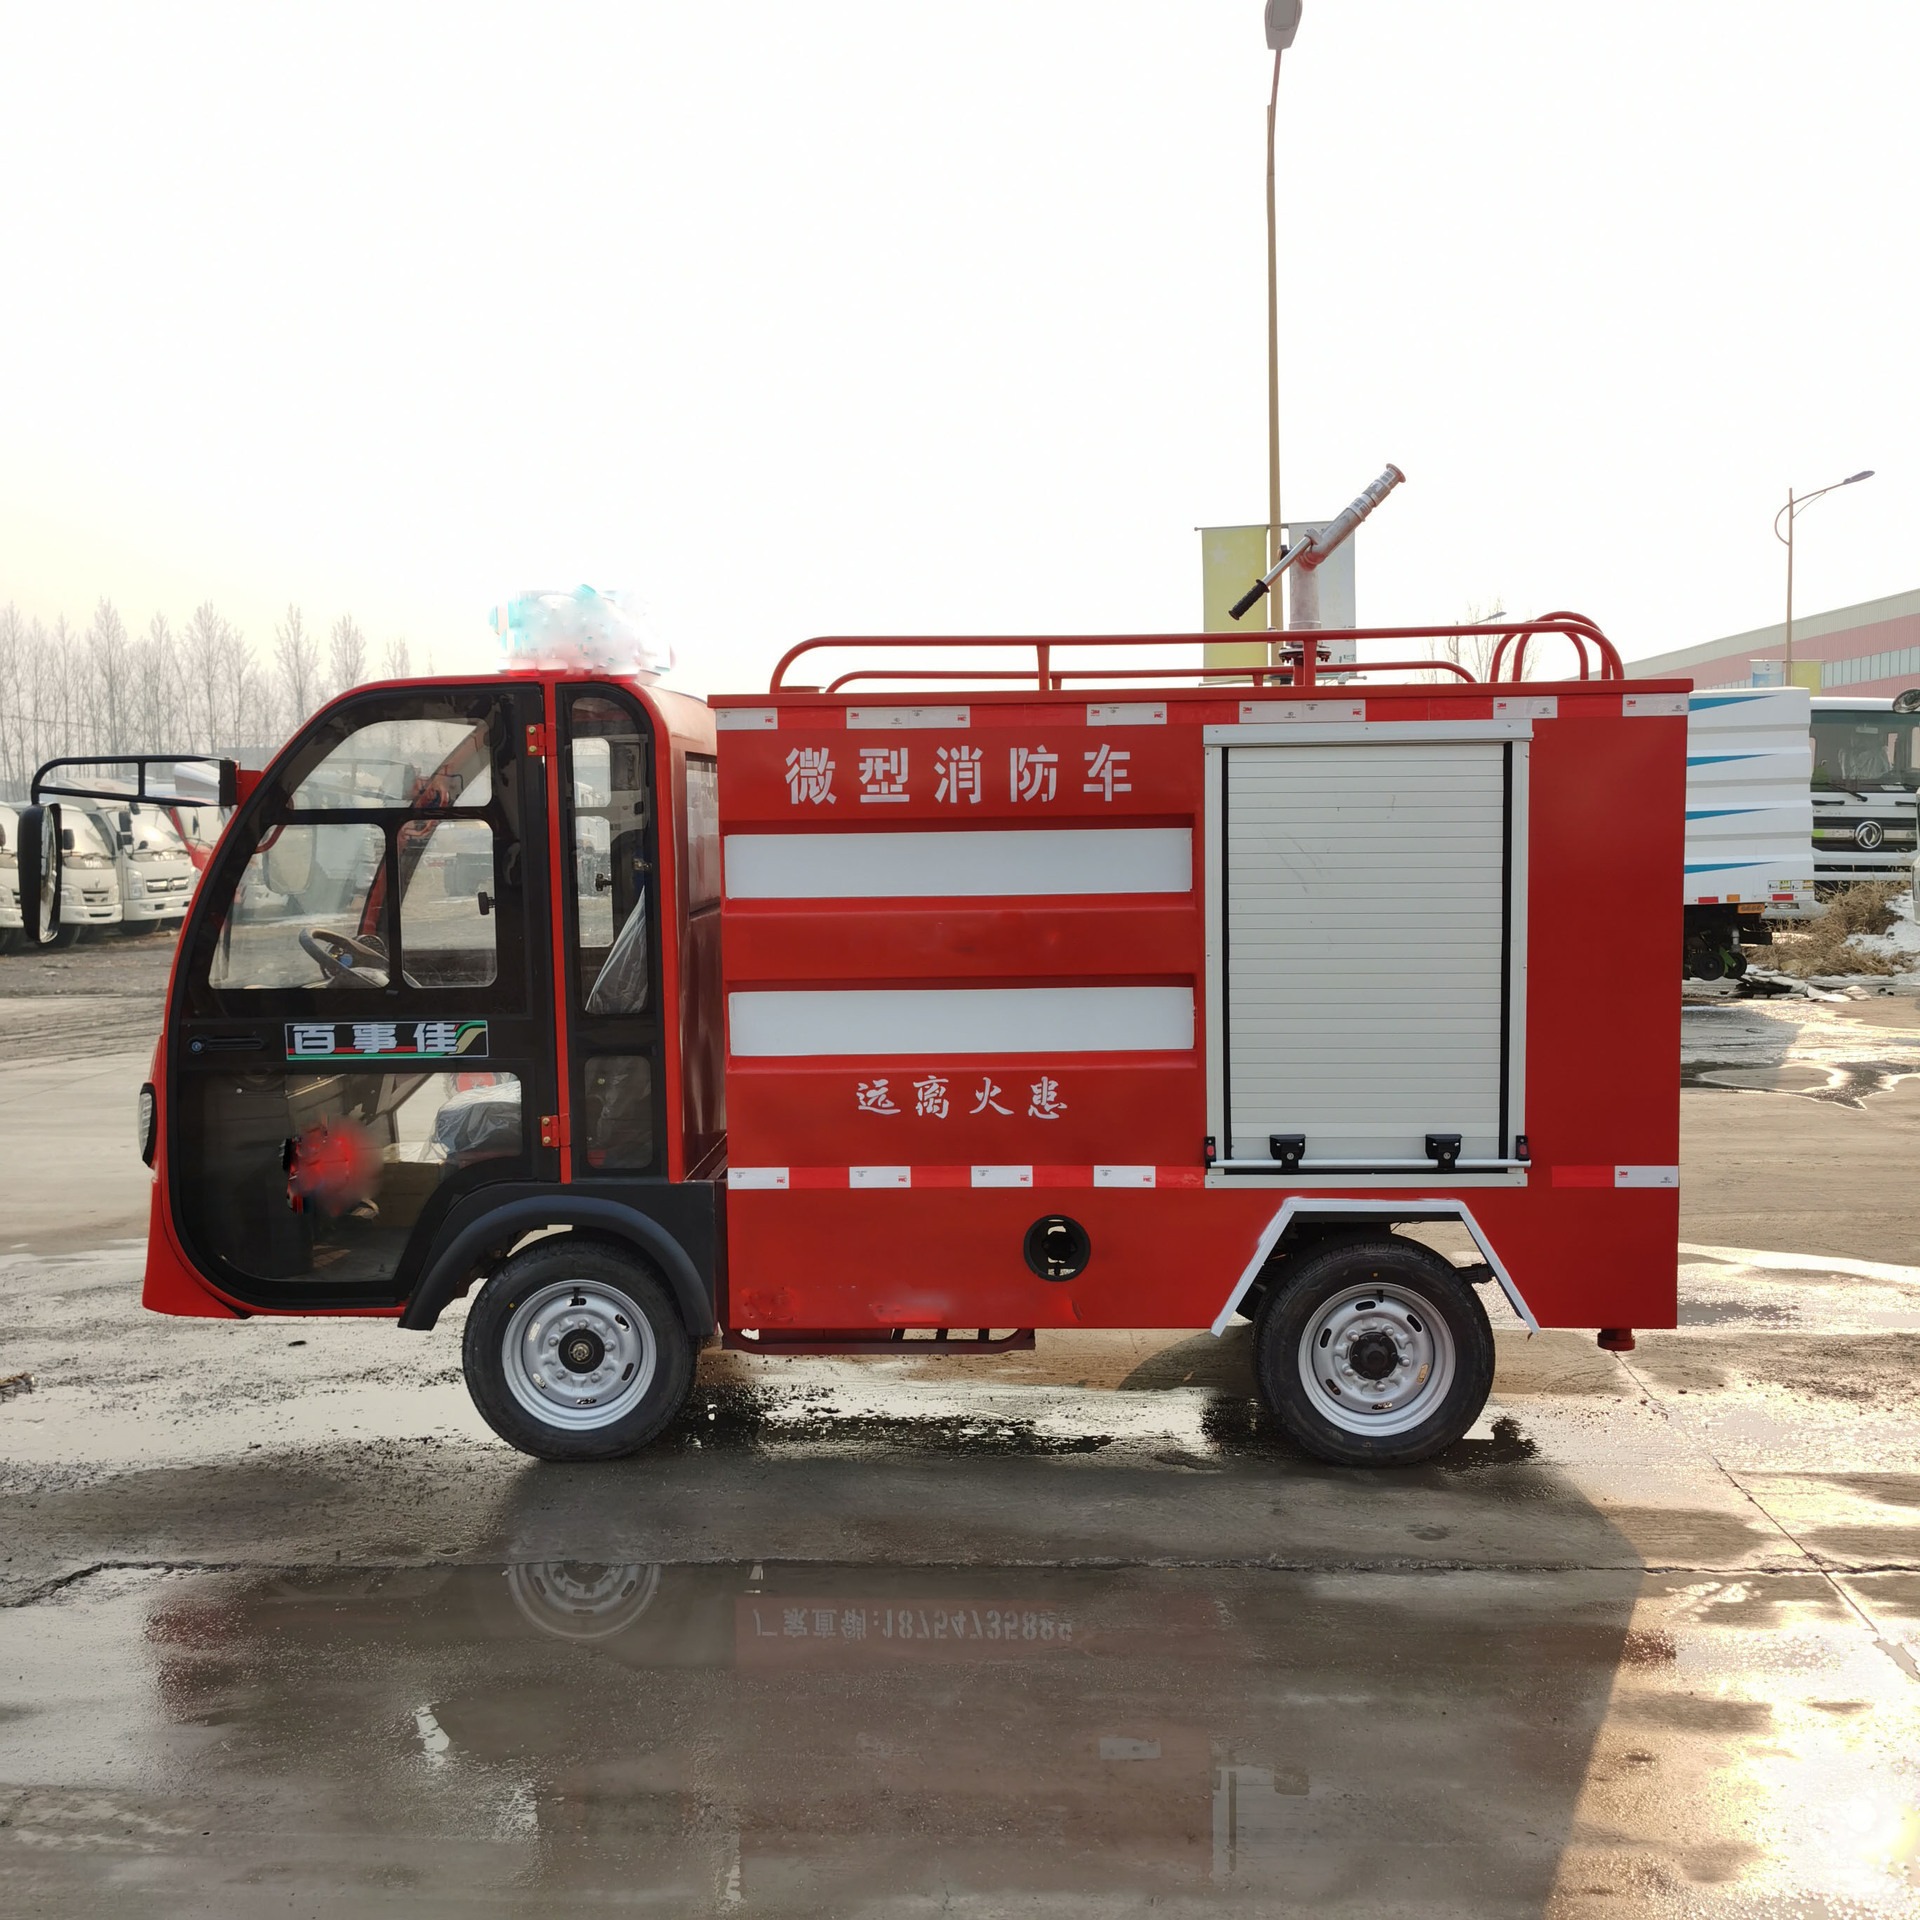 新款 电动小型消防车 新能源消防巡逻车 大轮胎 续航里程长 中运威